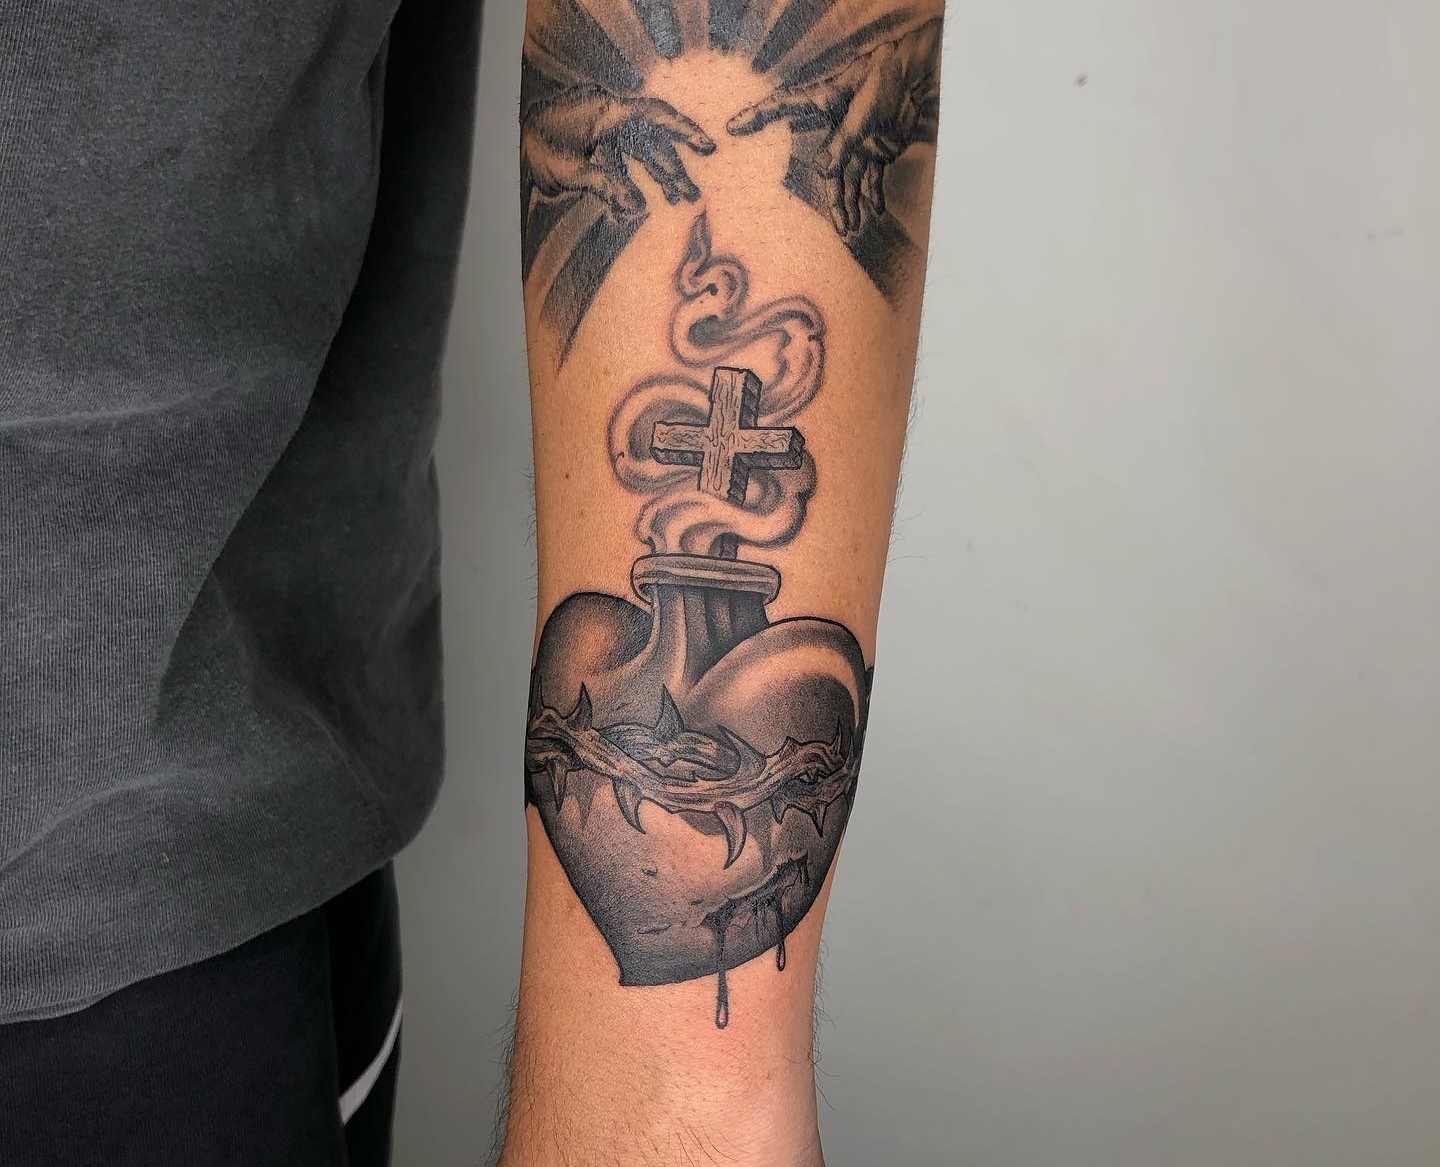 Awesome Sacred Heart Tattoo On Hand